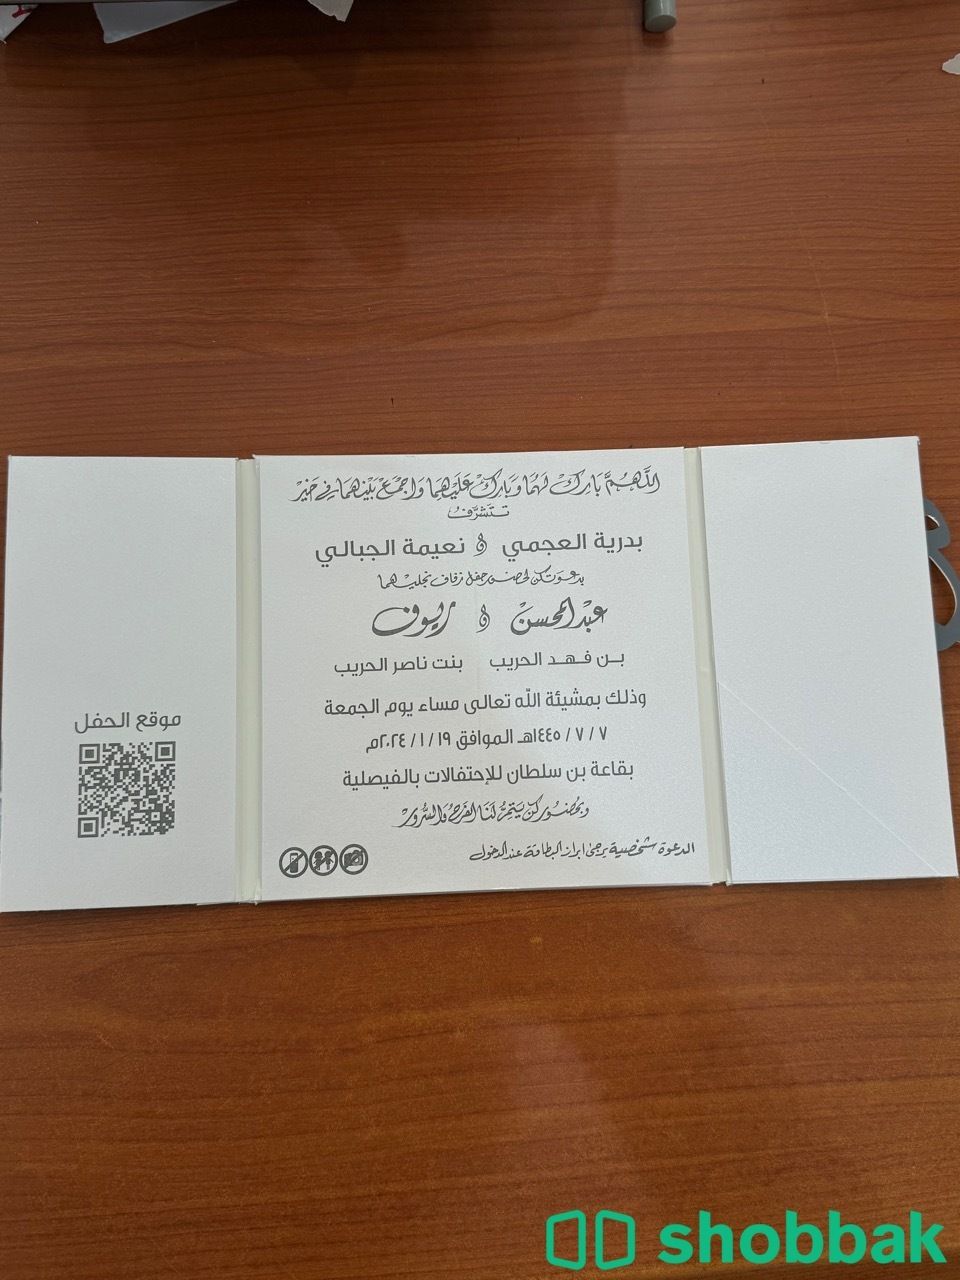 مطابع Shobbak Saudi Arabia